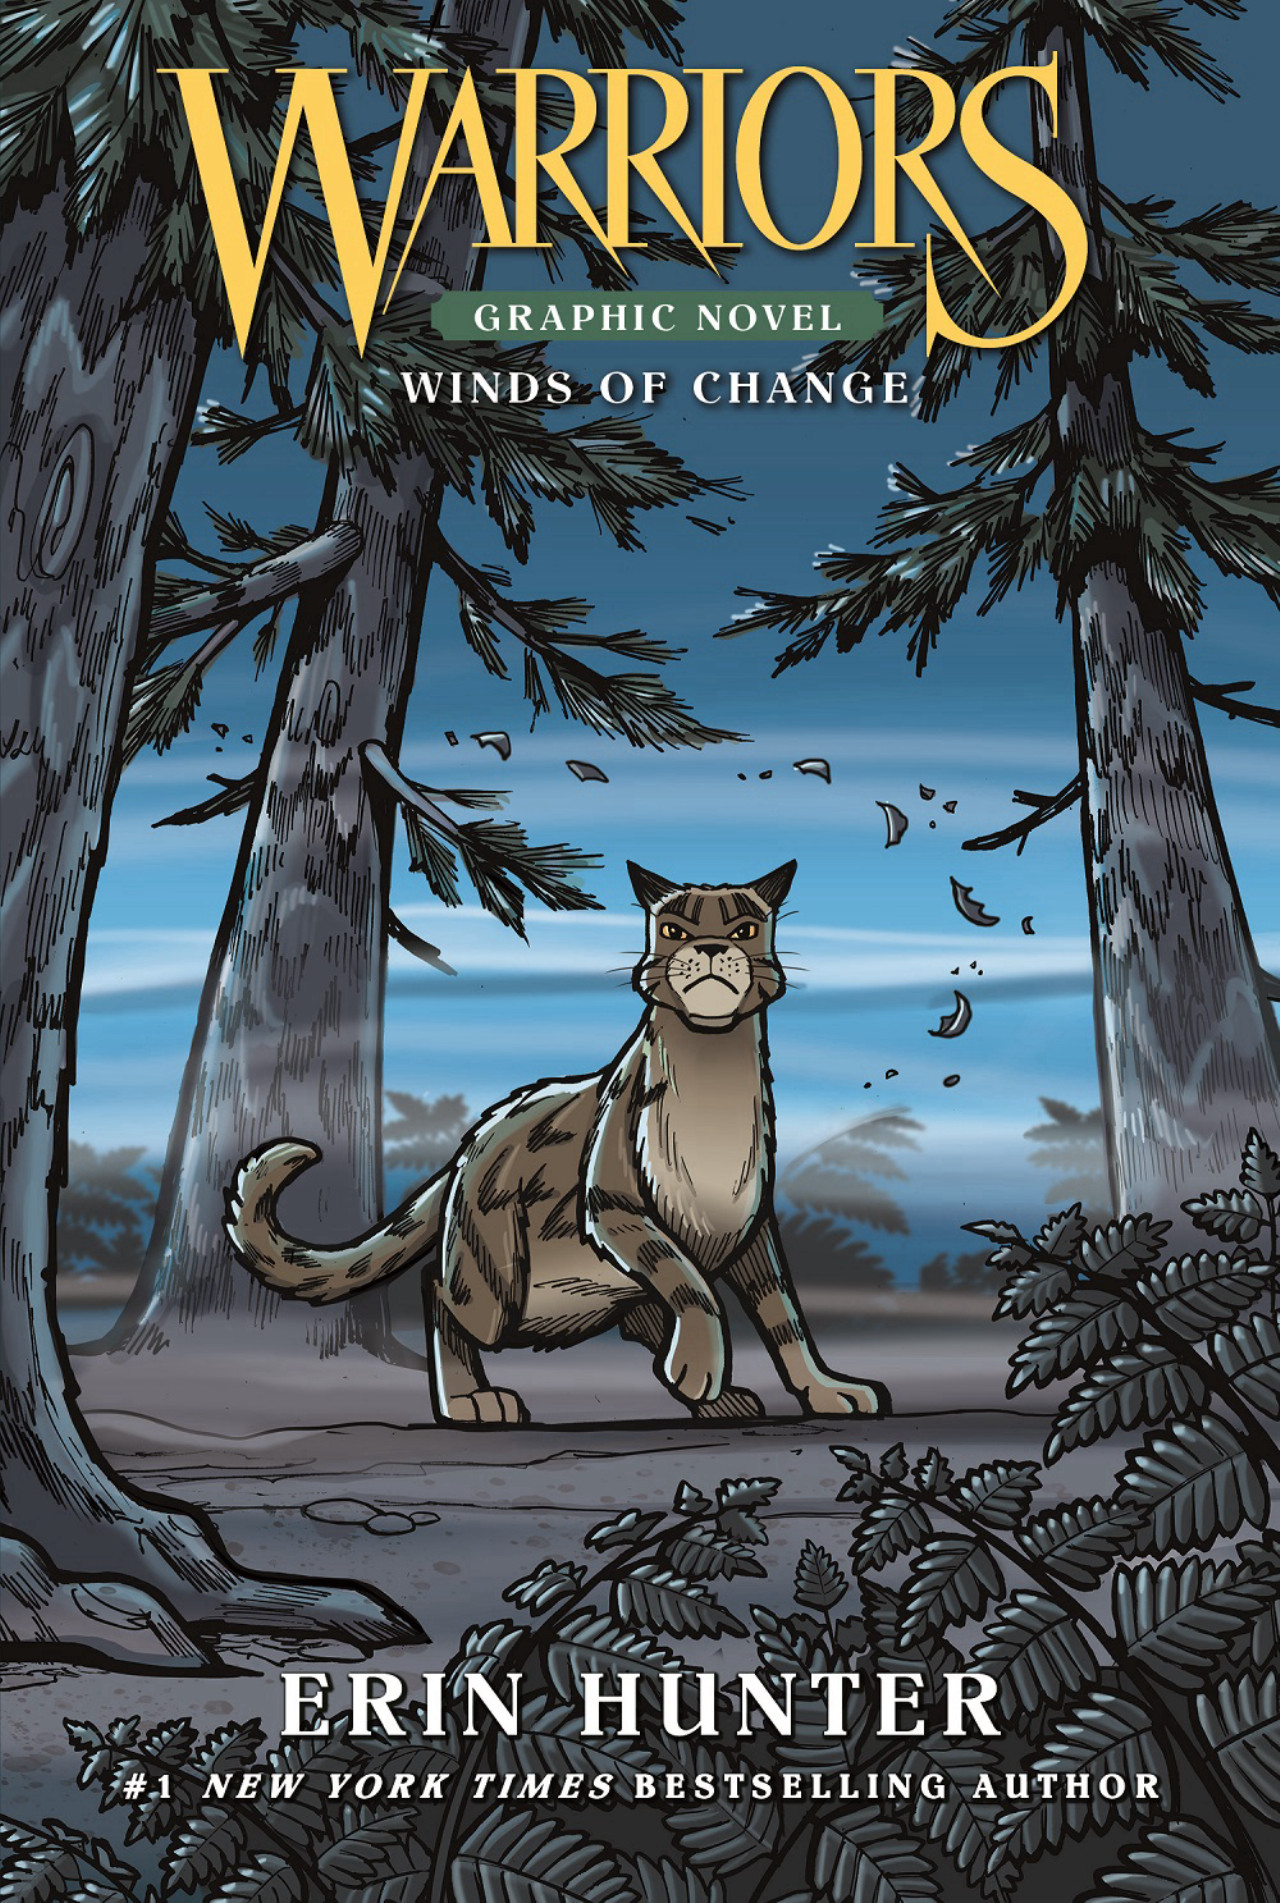 Wind (book), Warriors Wiki